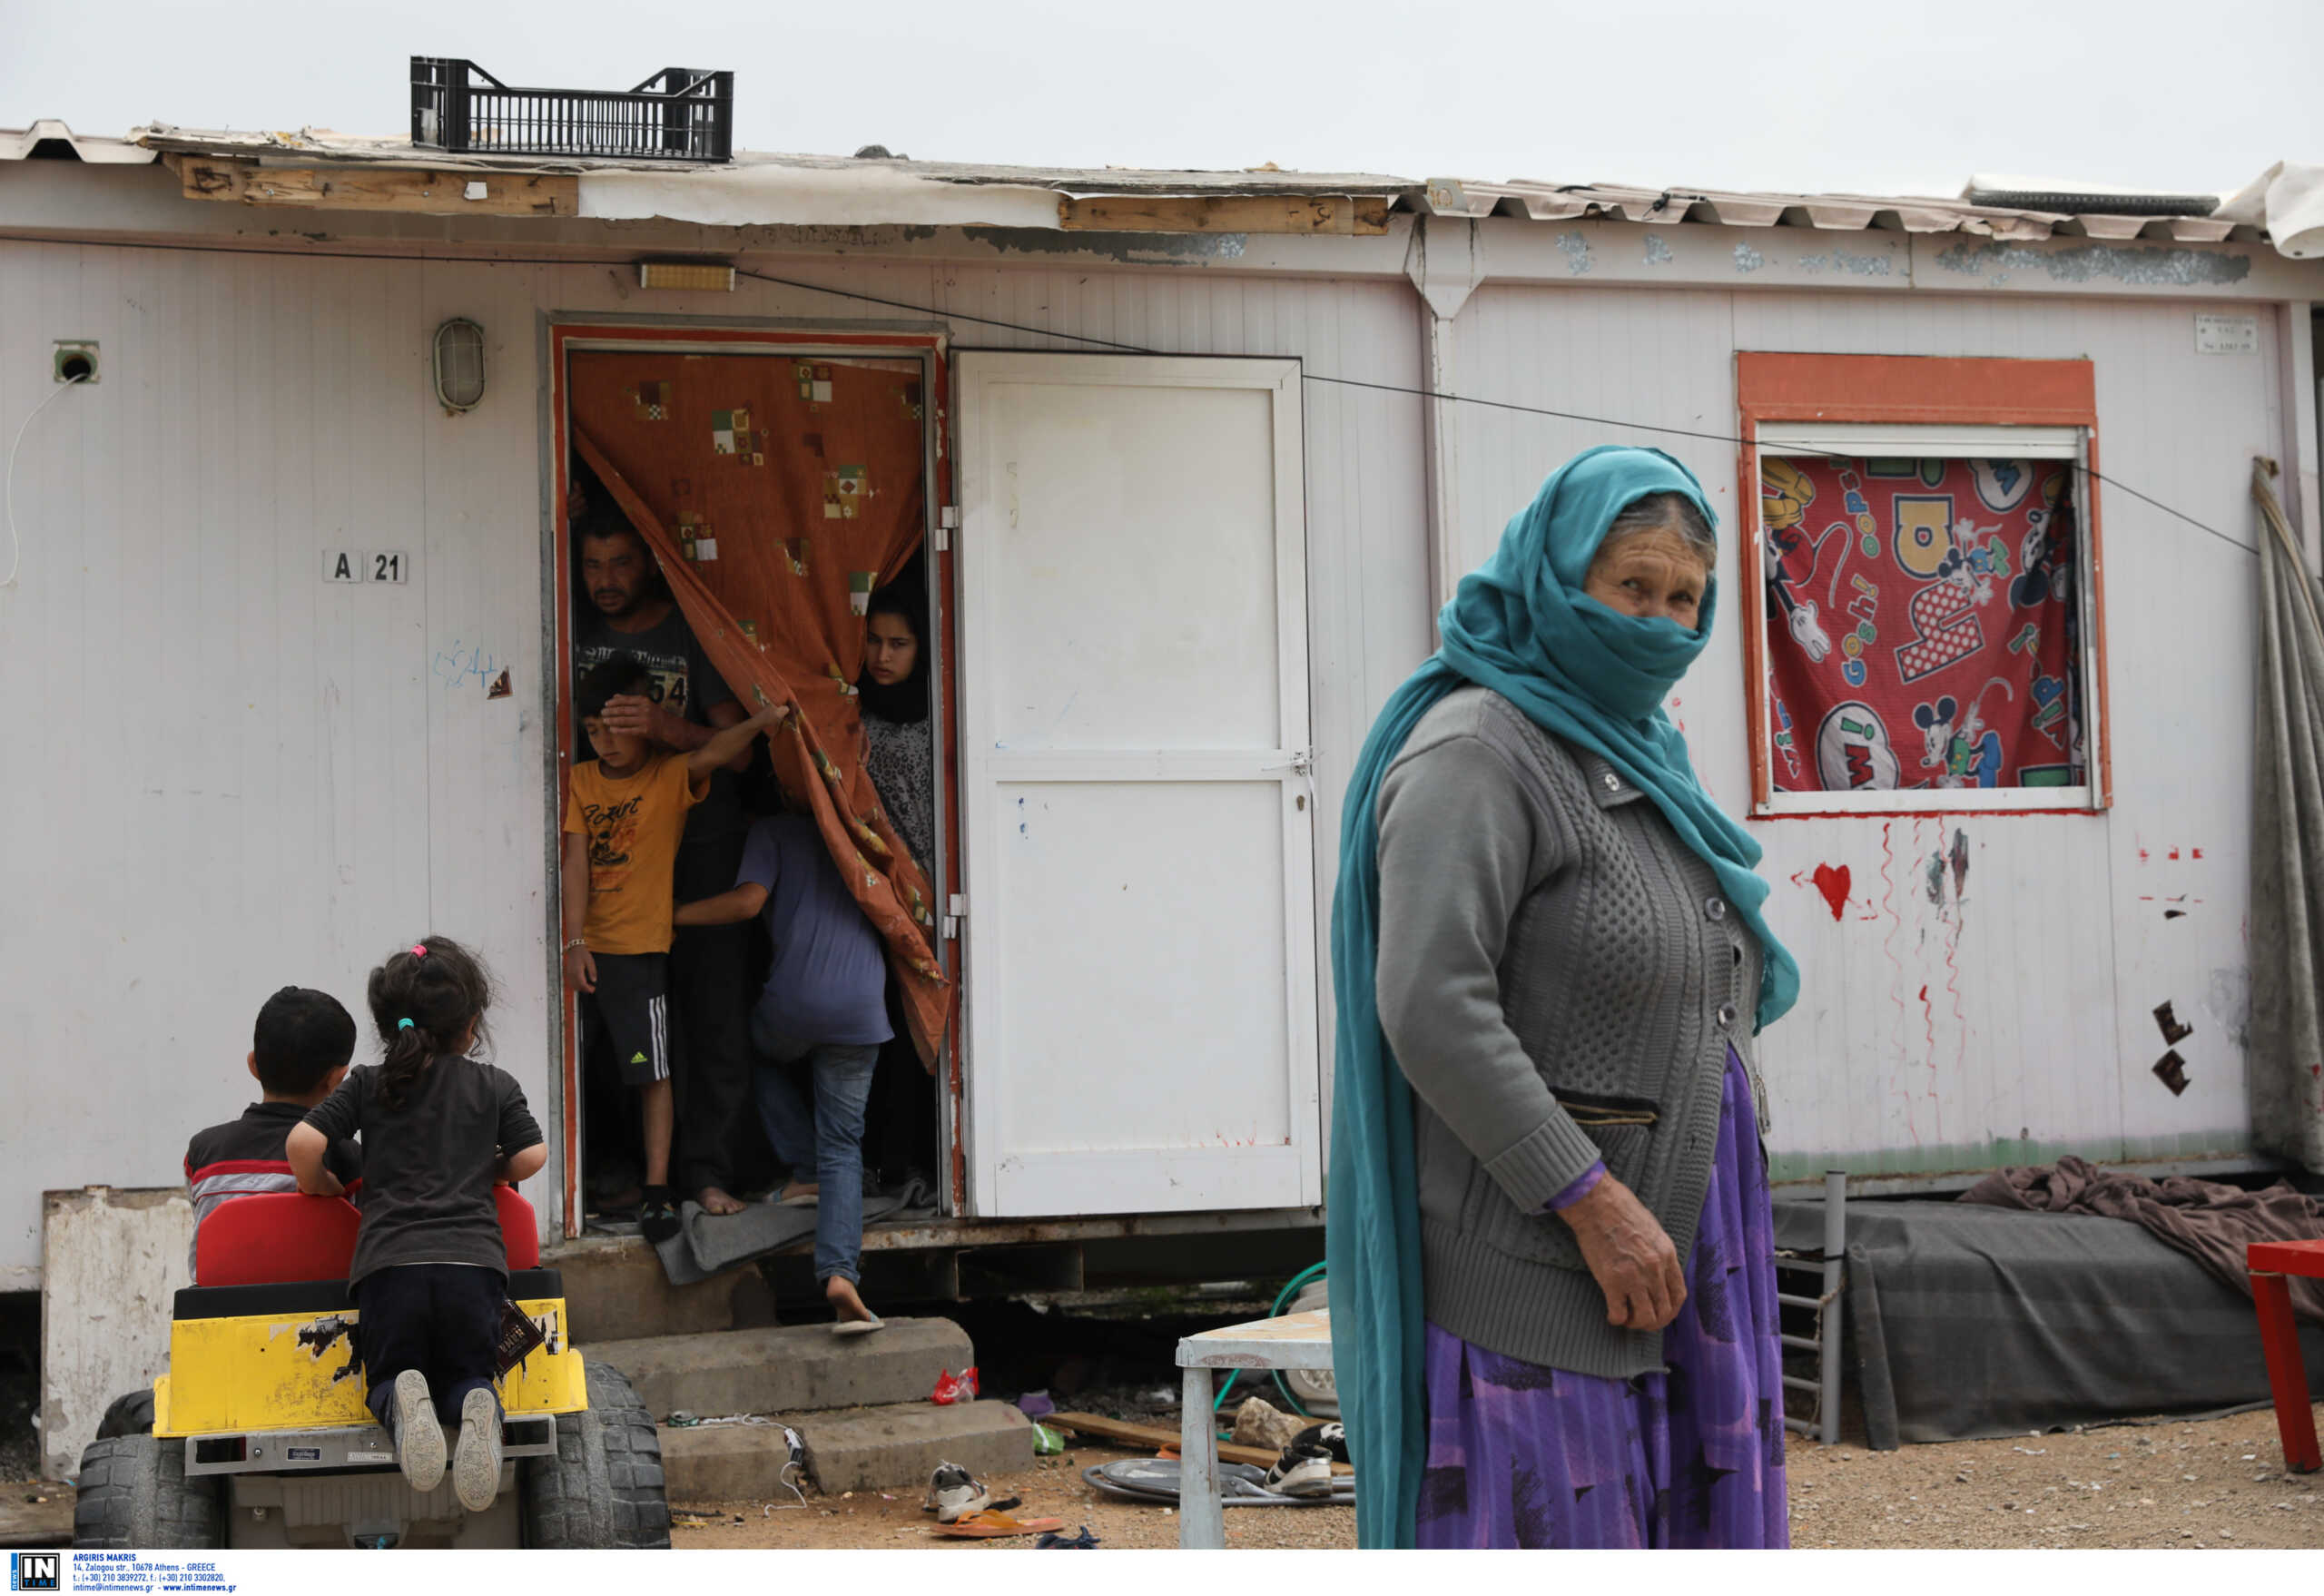 Πηγές υπουργείου Μετανάστευσης και Ασύλου: Η εκκένωση της δομής προσφύγων στον Ελαιώνα συνεχίζεται κανονικά